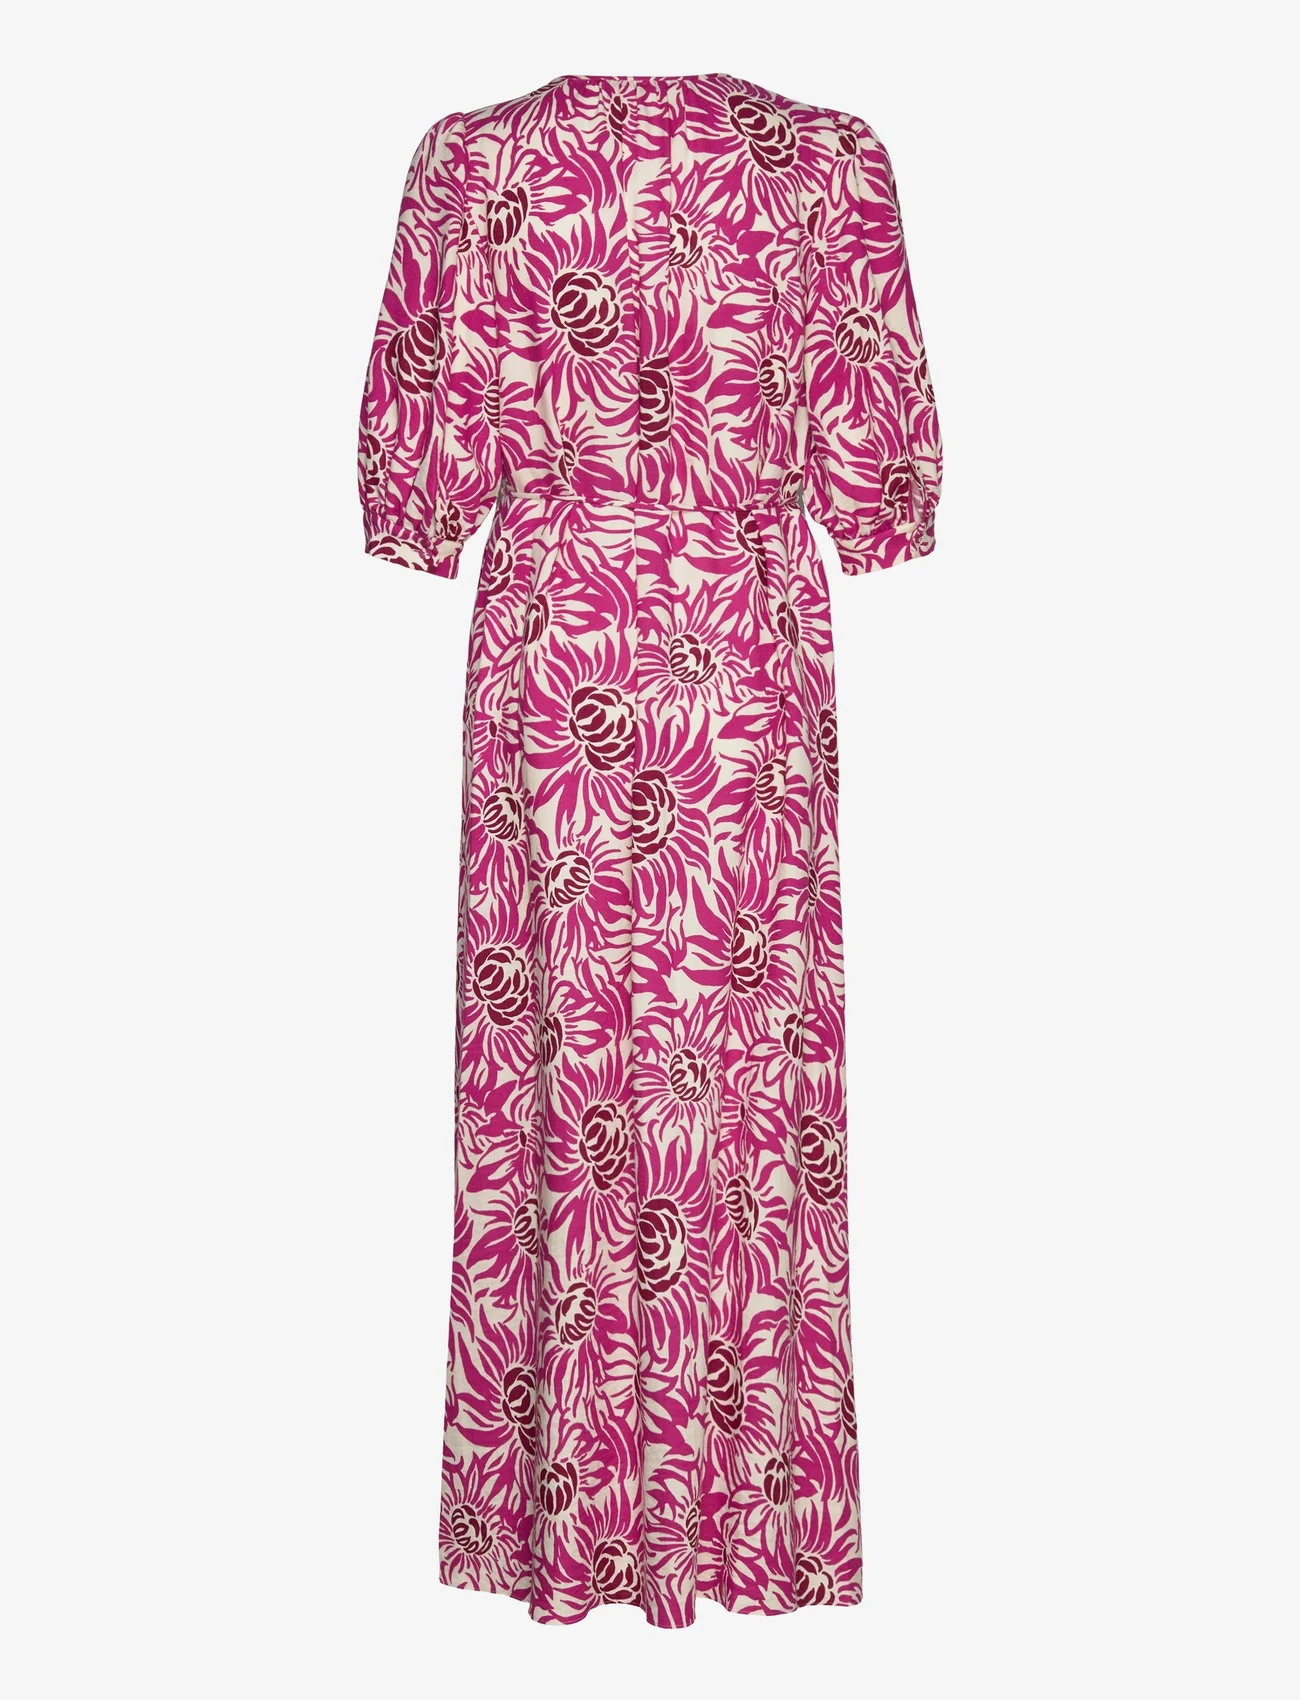 Diane von Furstenberg - DVF DROGO DRESS - odzież imprezowa w cenach outletowych - anemone signature pink - 1